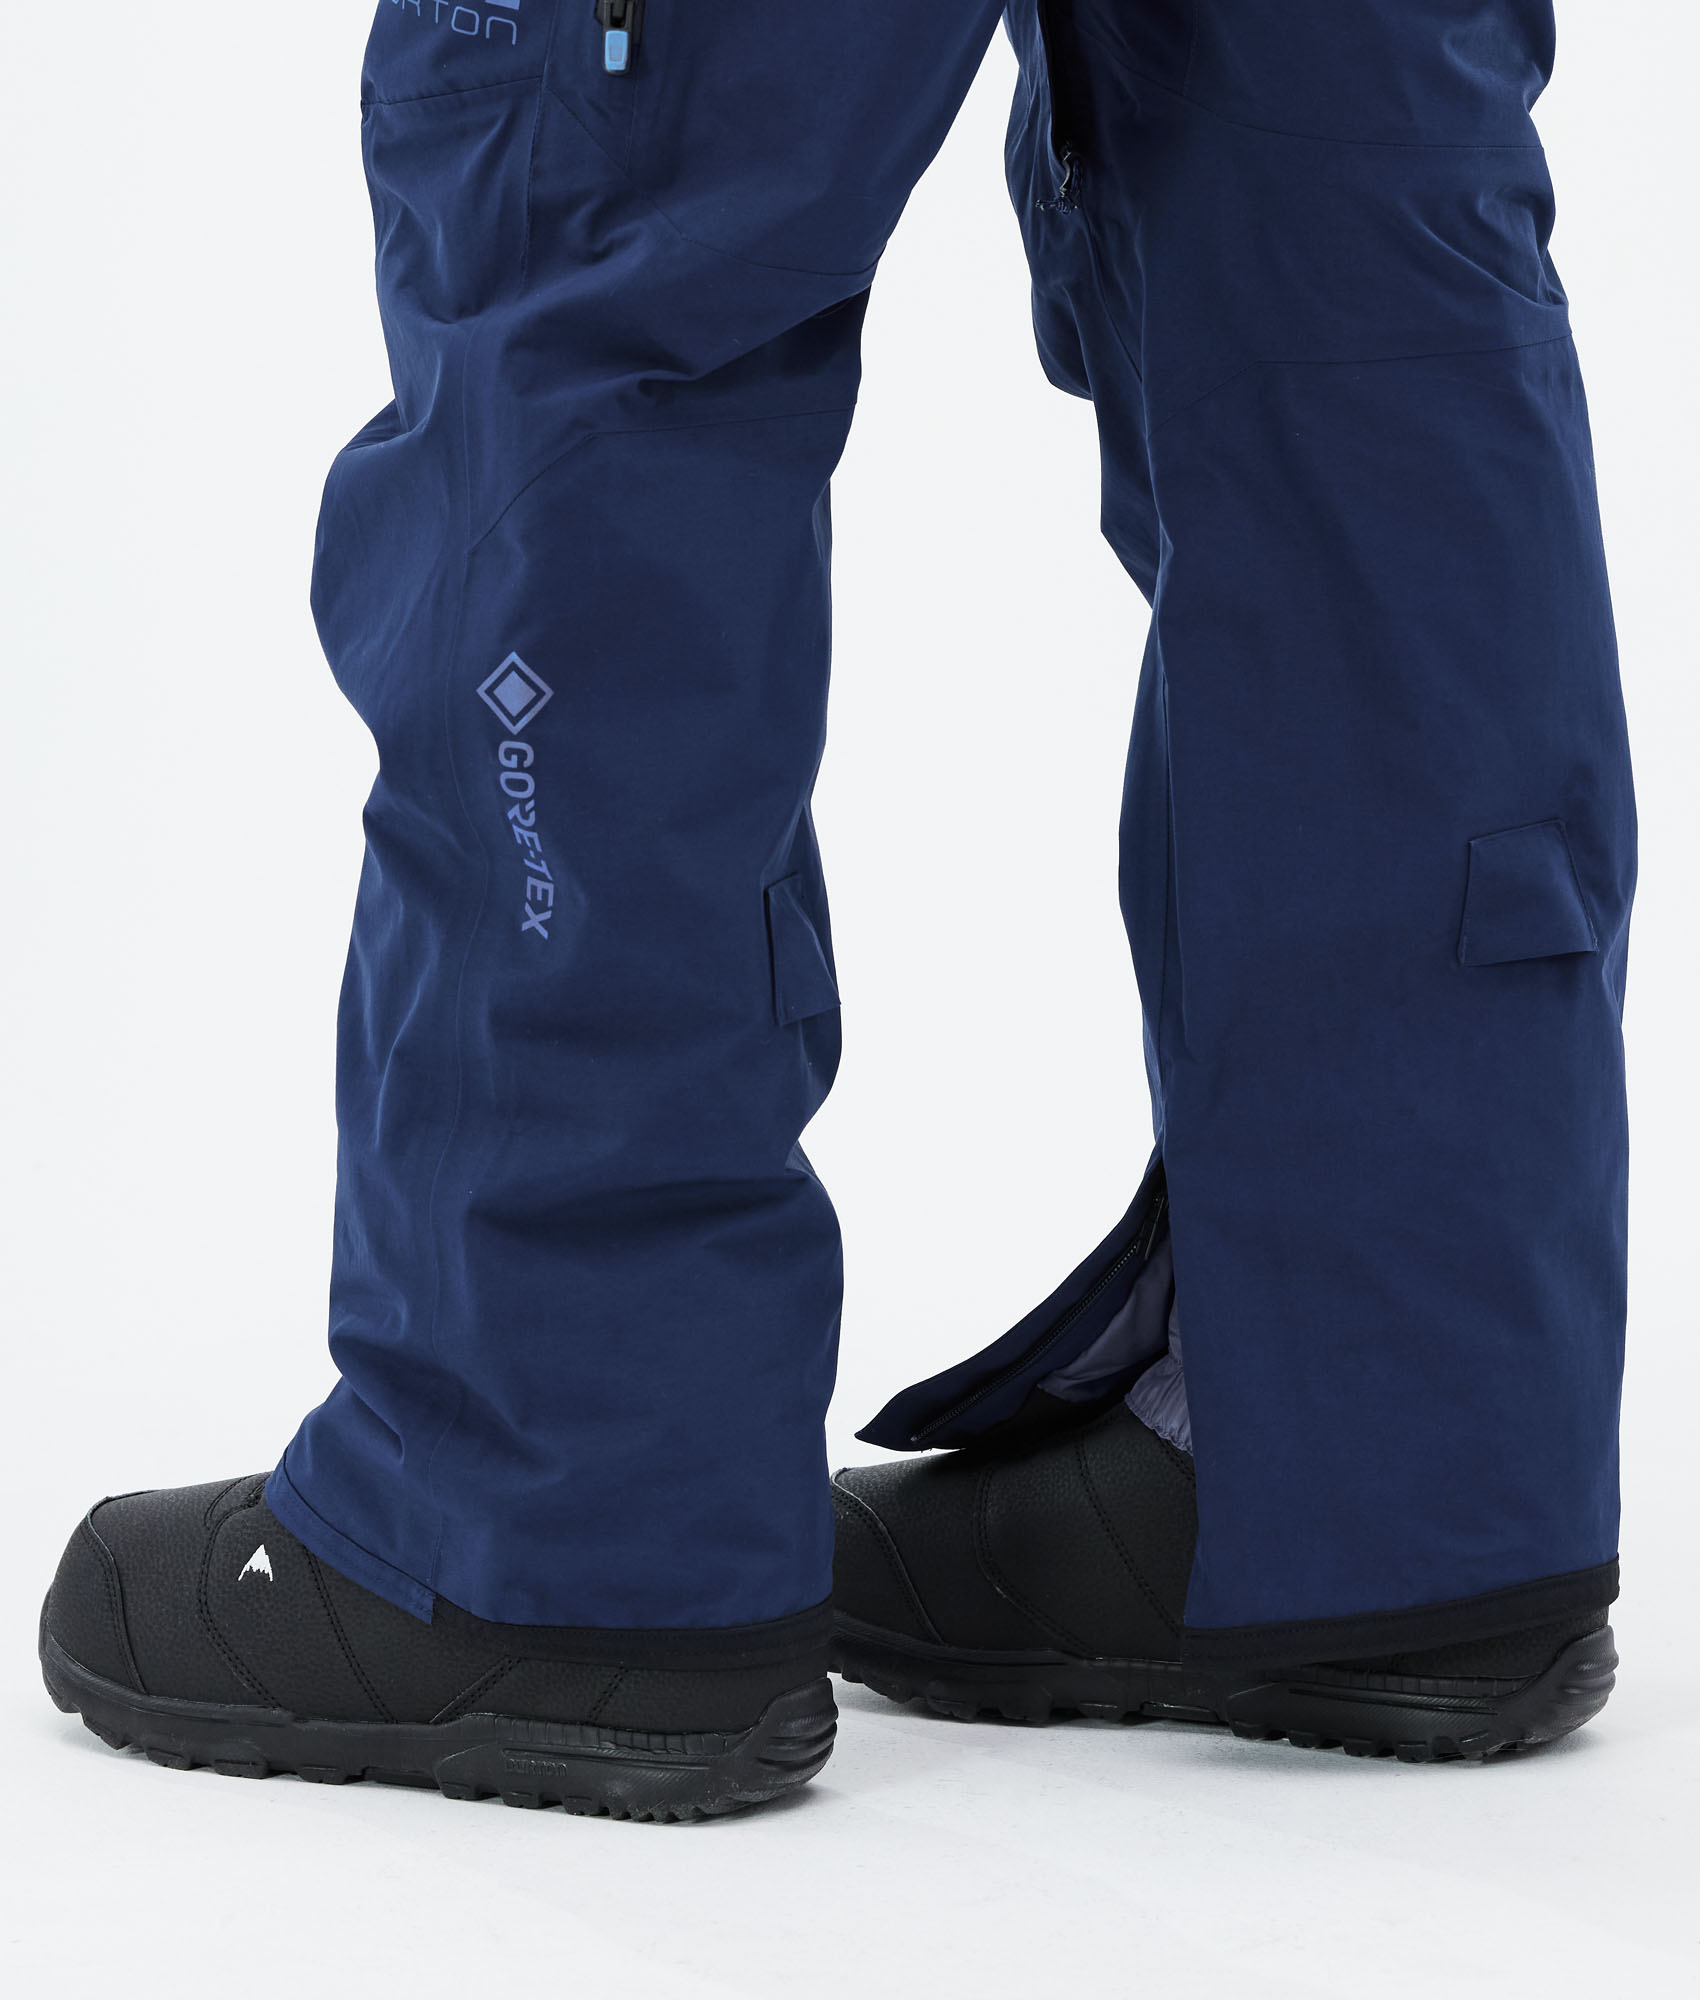 新品未使用 21-22 BURTON AK GORE-TEX SWASH PNT DRESS BLUE Lサイズ